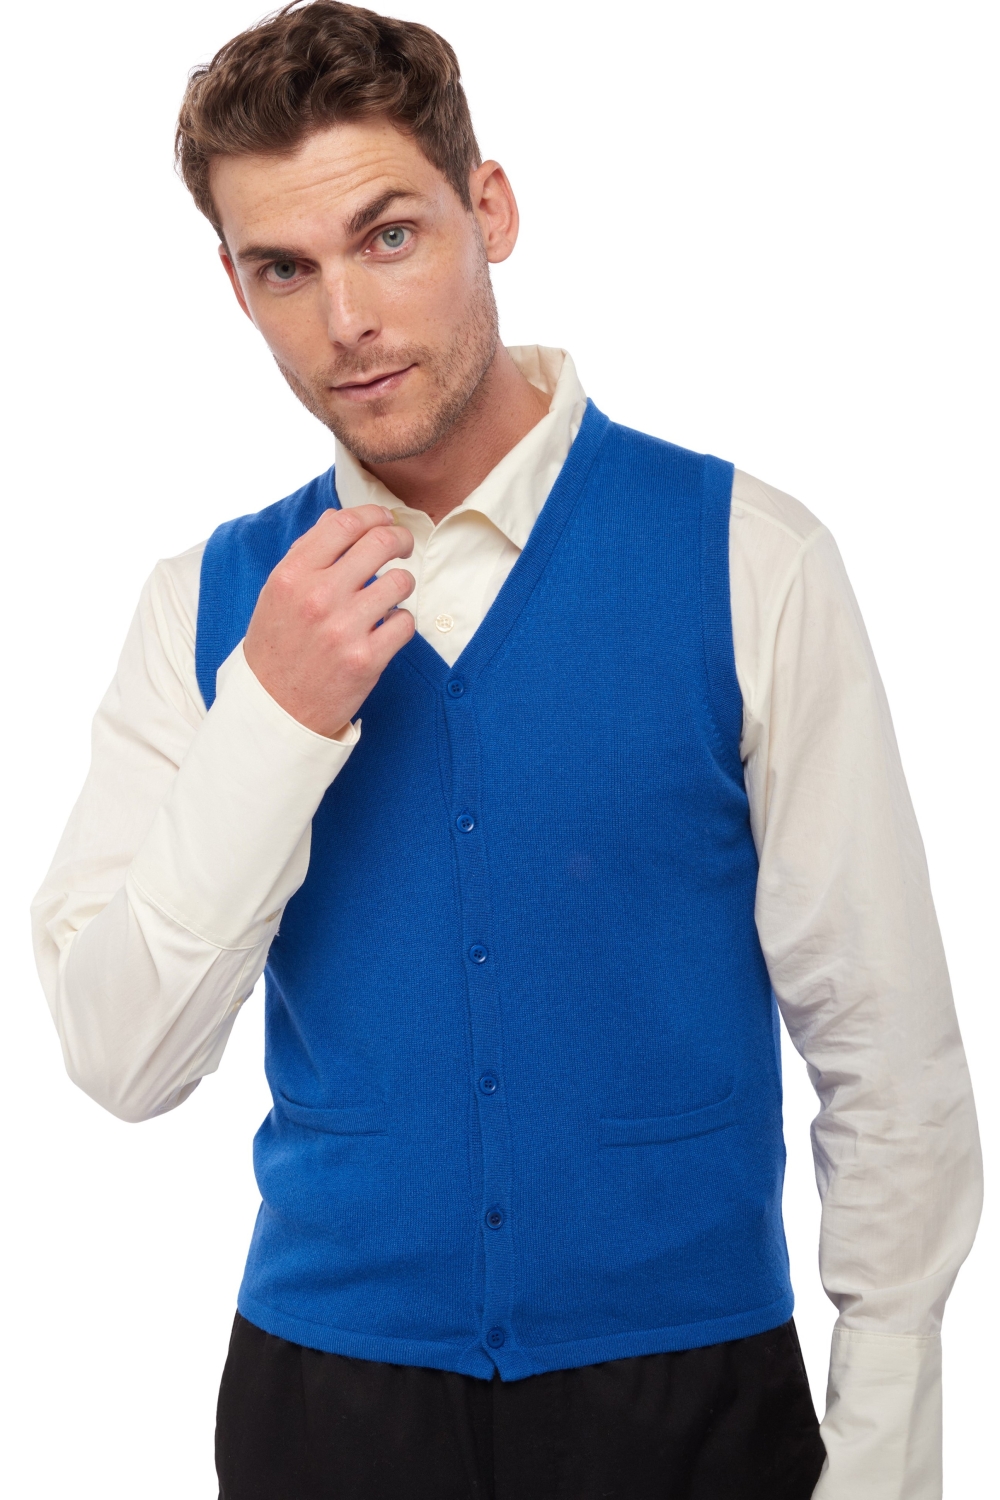 Cashmere men waistcoat sleeveless sweaters basile lapis blue 4xl